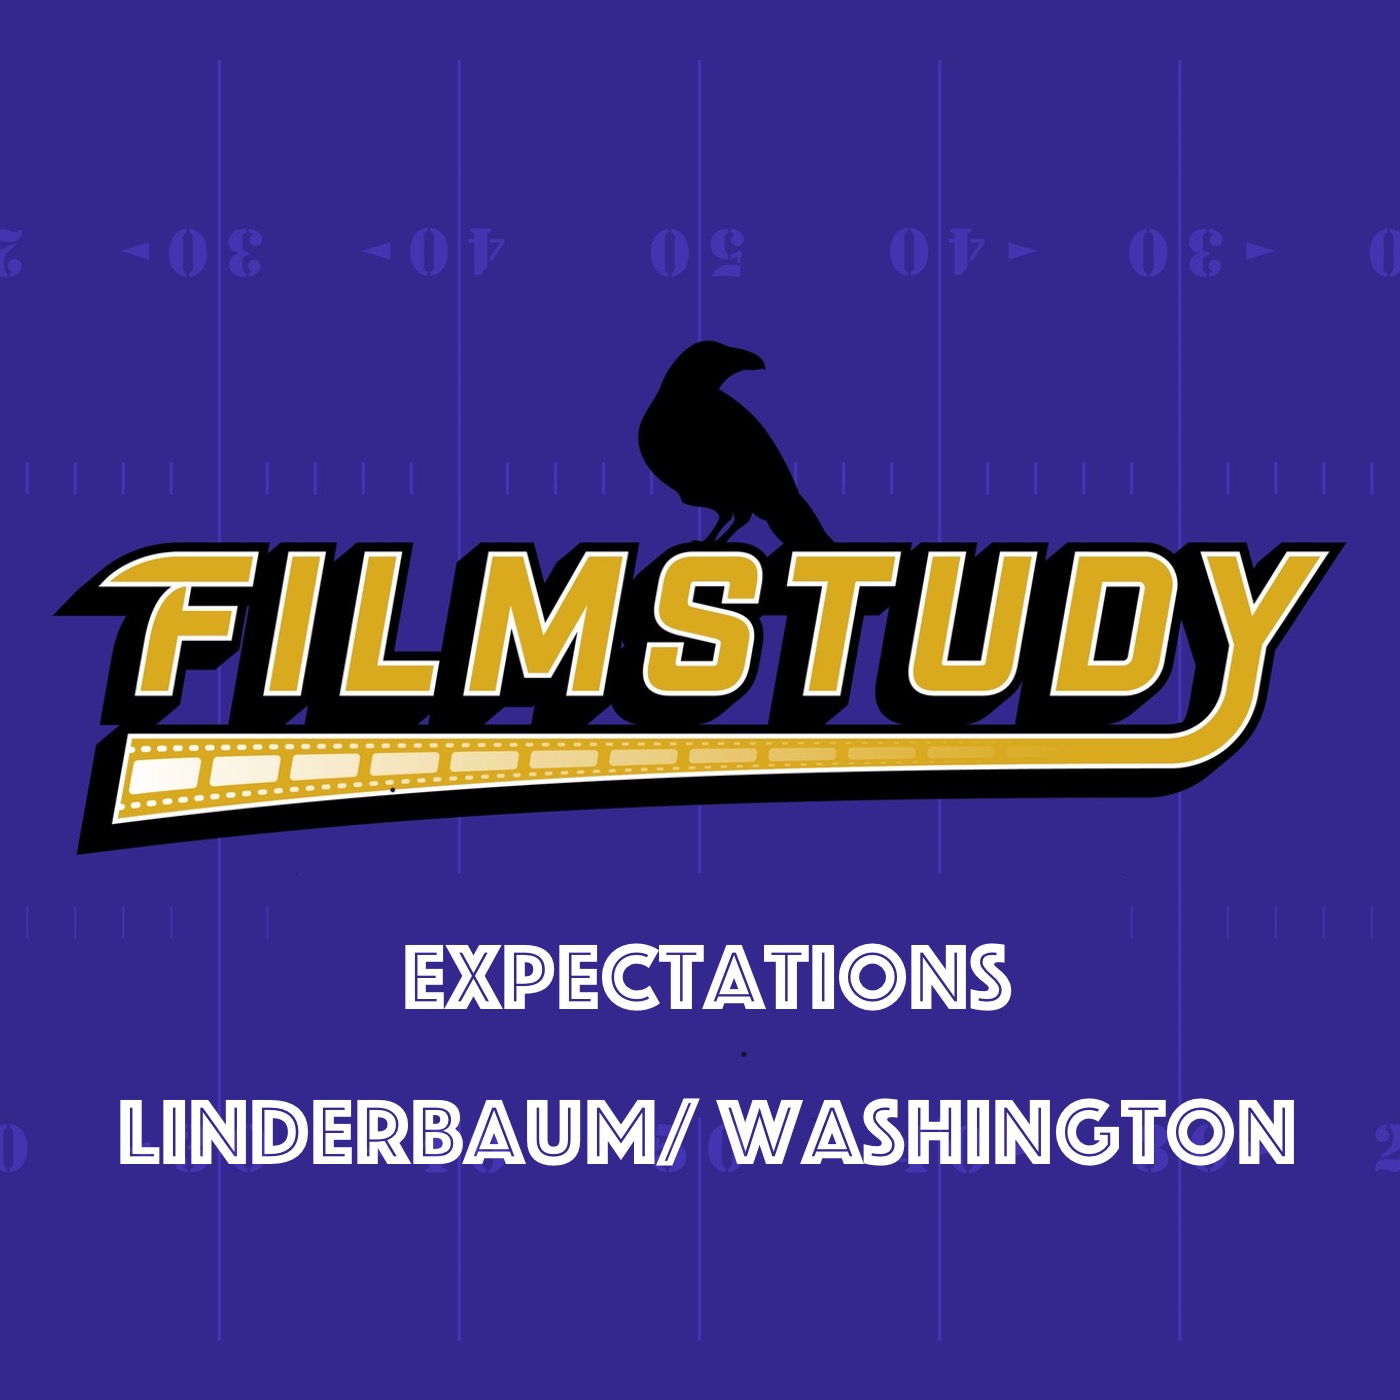 Expectations : Linderbaum/ Washington